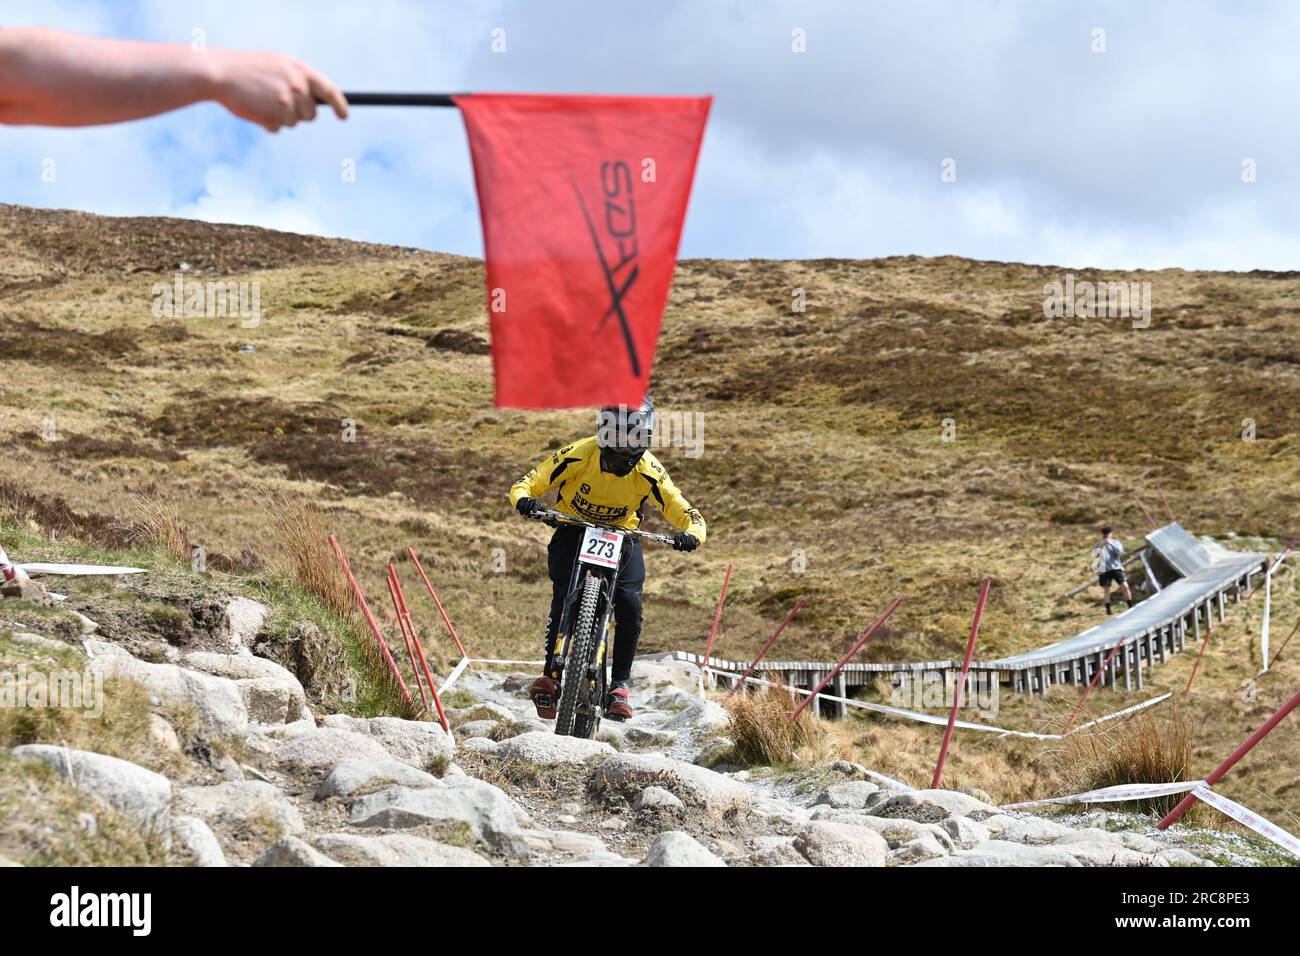 Rote Flagge beim SDA Downhill Mountain Bike Race, d. h. alle Rennfahrer müssen anhalten - Fort William, Schottland, Großbritannien Stockfoto